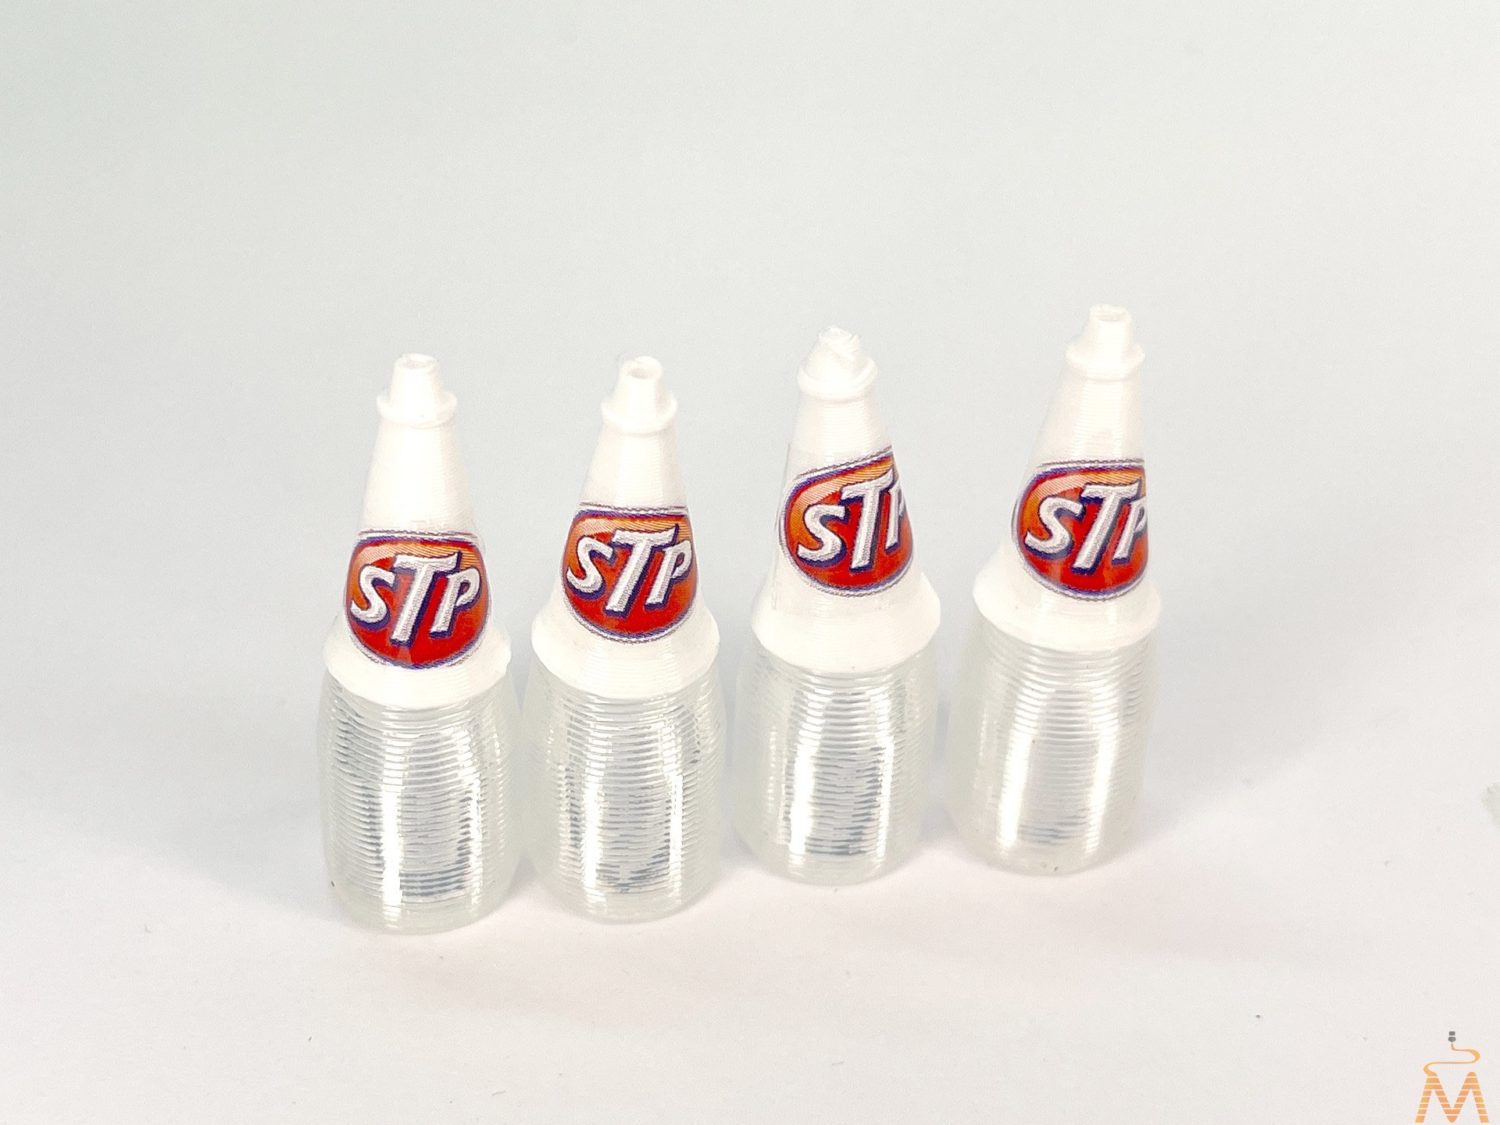 Stp Bottle